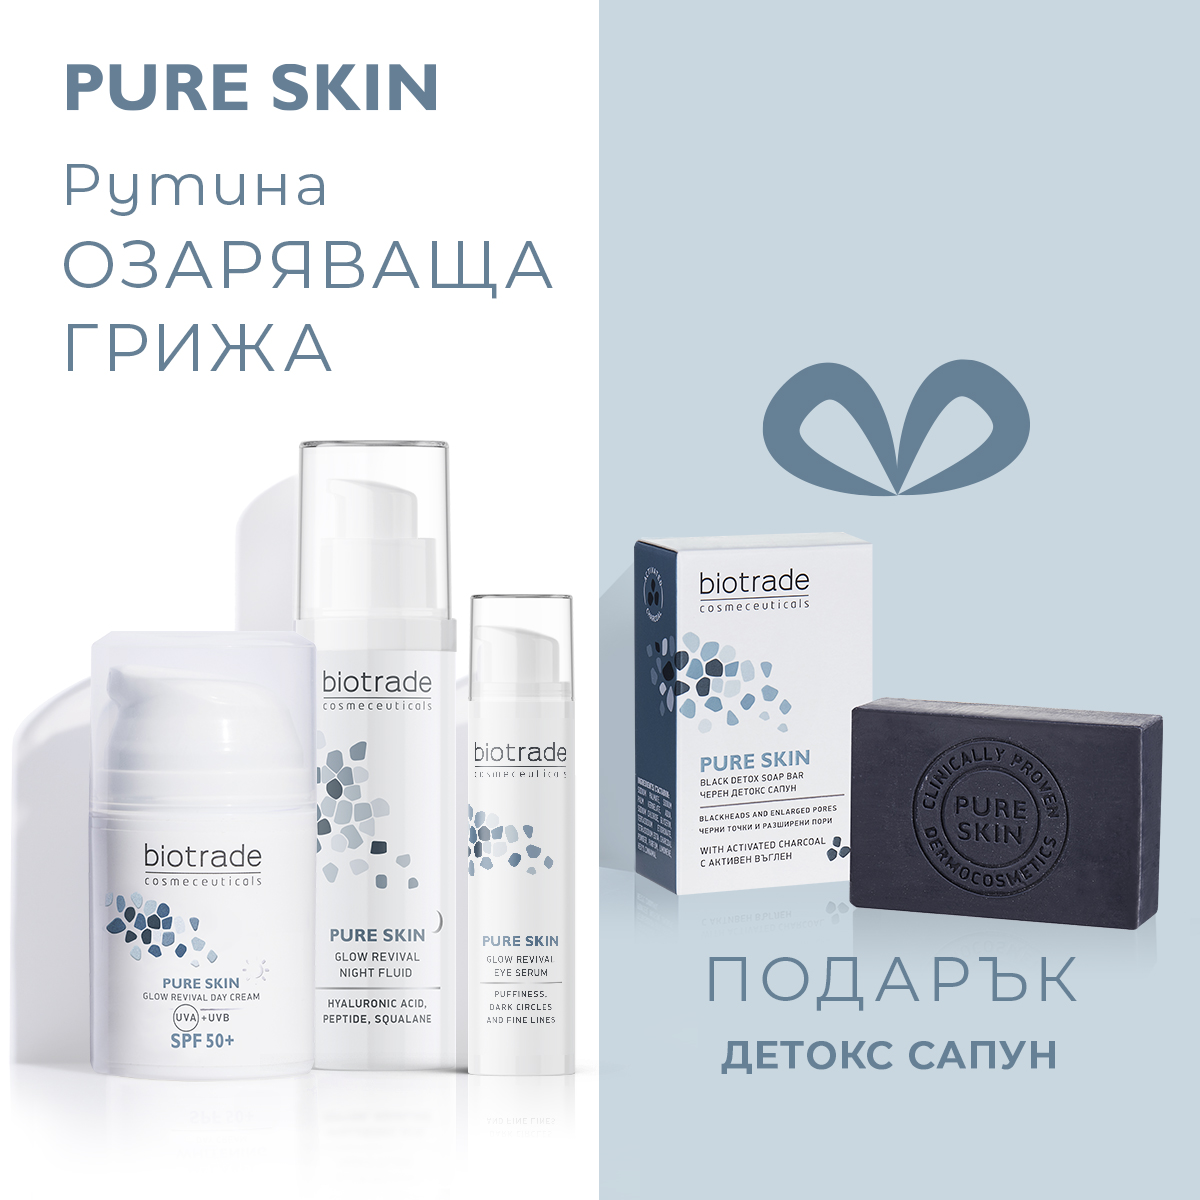 Pure Skin: озаряваща грижа + подарък